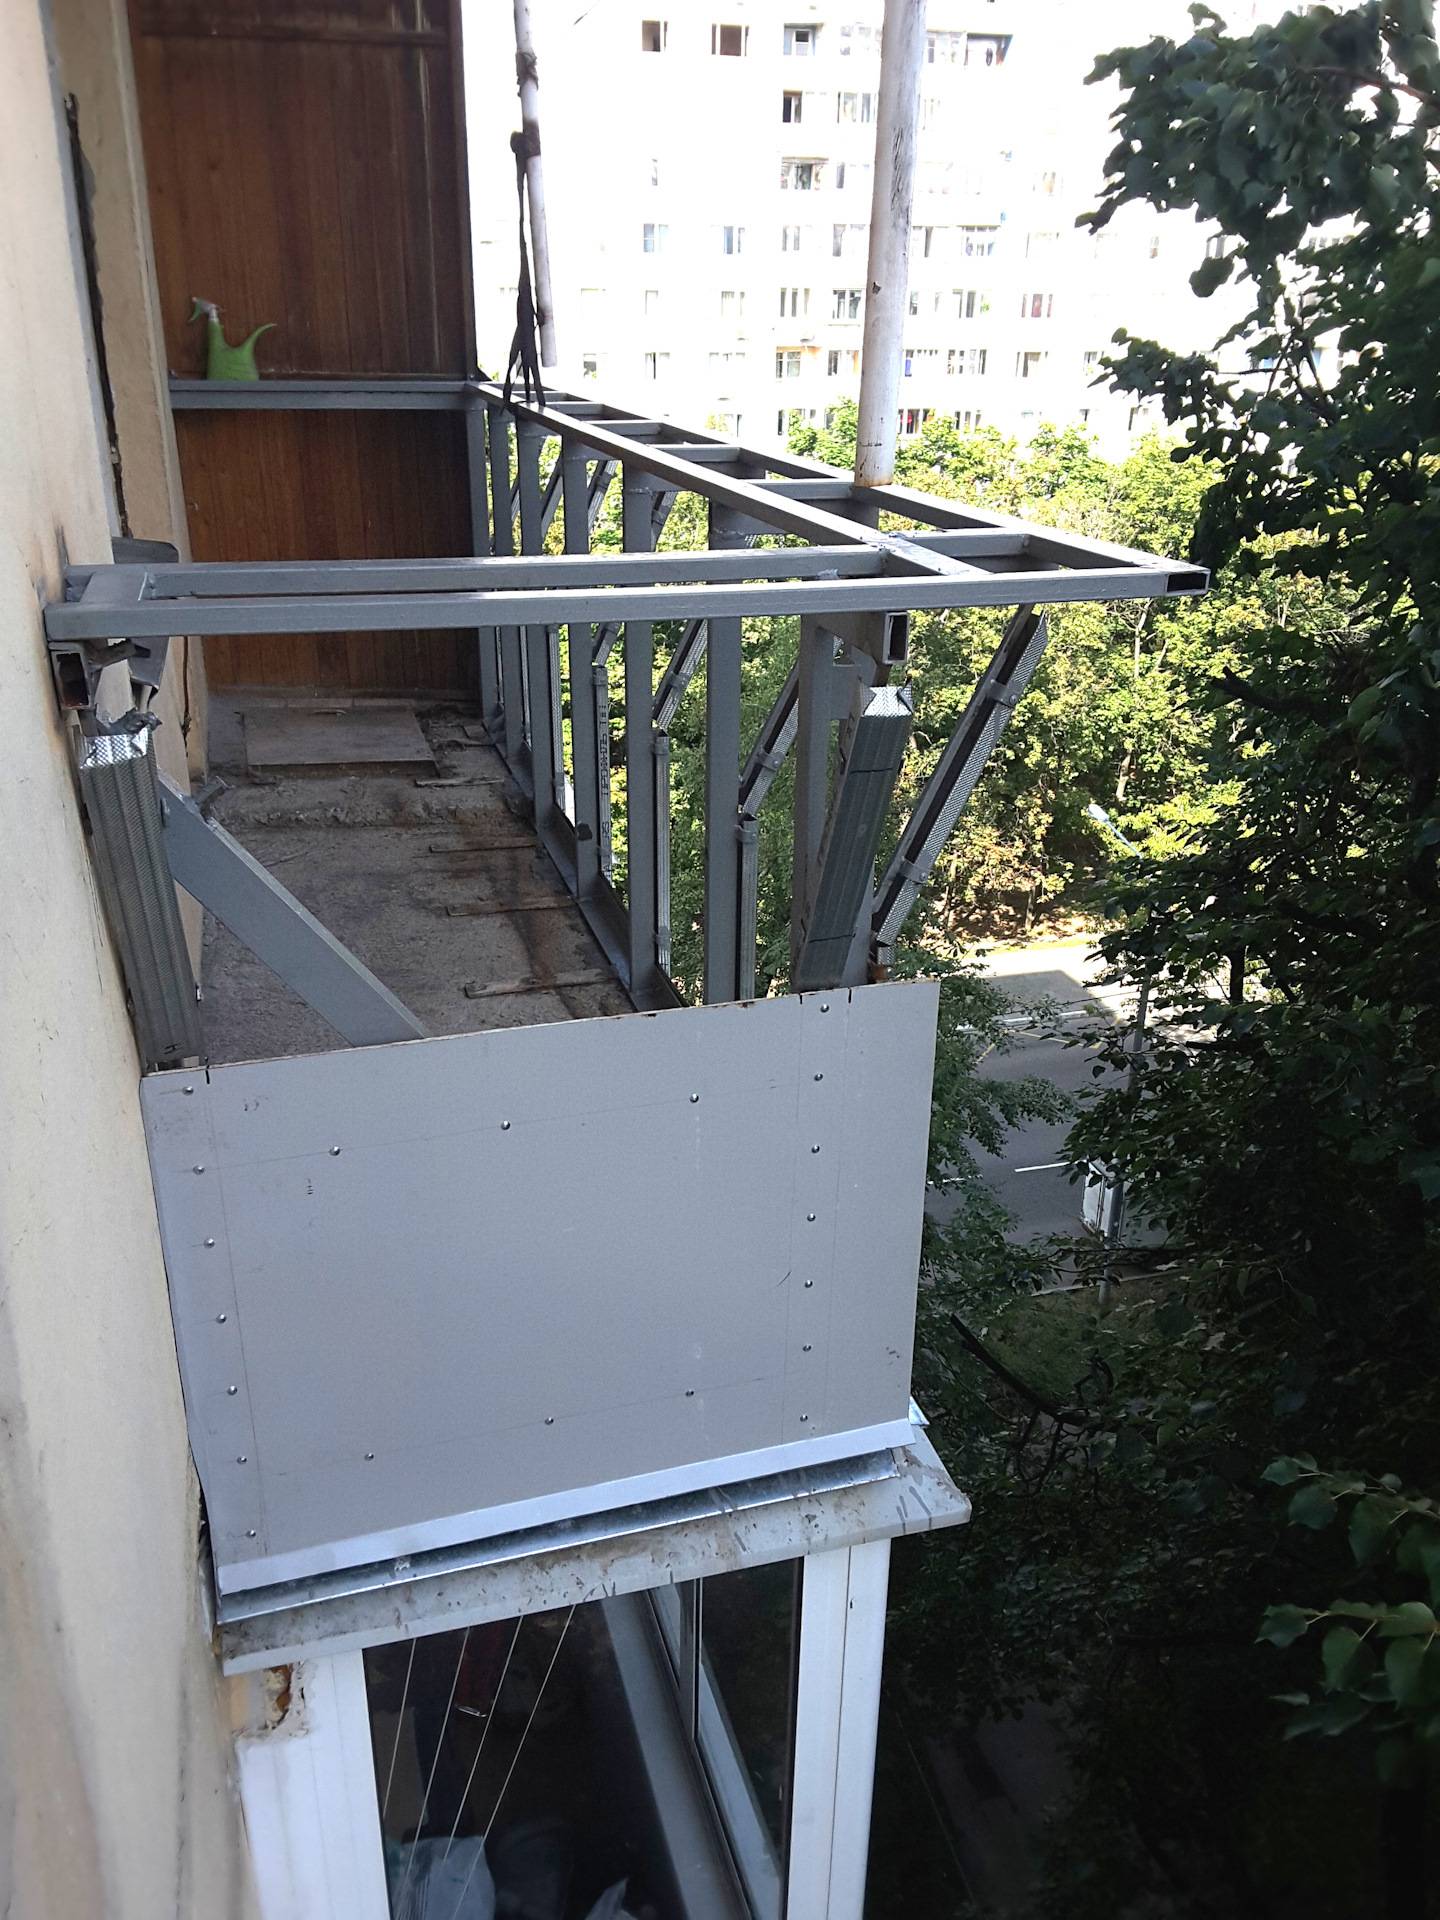 Остекление балконов с крышей на последнем этаже: материалы и этапы выполнения работ